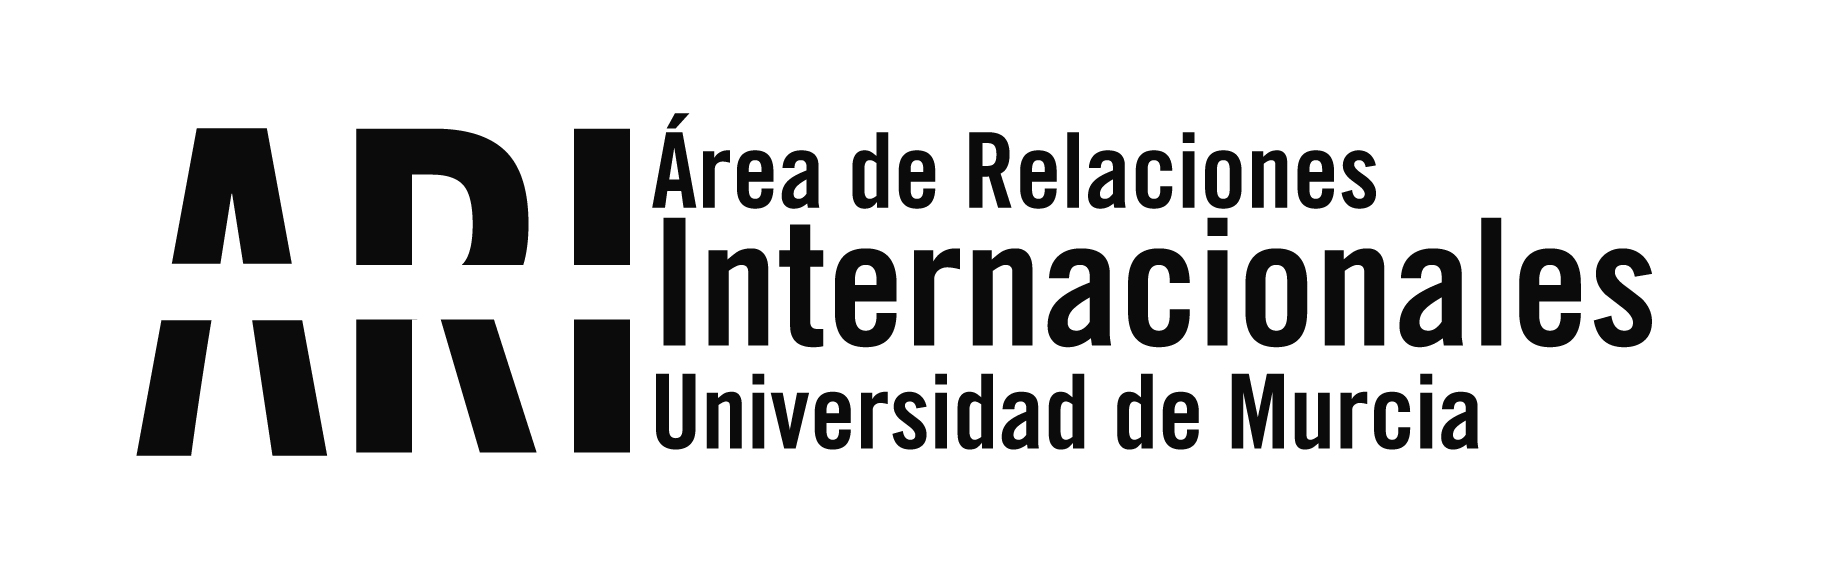 Asistencia al XII Encuentro Bilateral Universidades Cubanas y Españolas - Área de Relaciones Internacionales